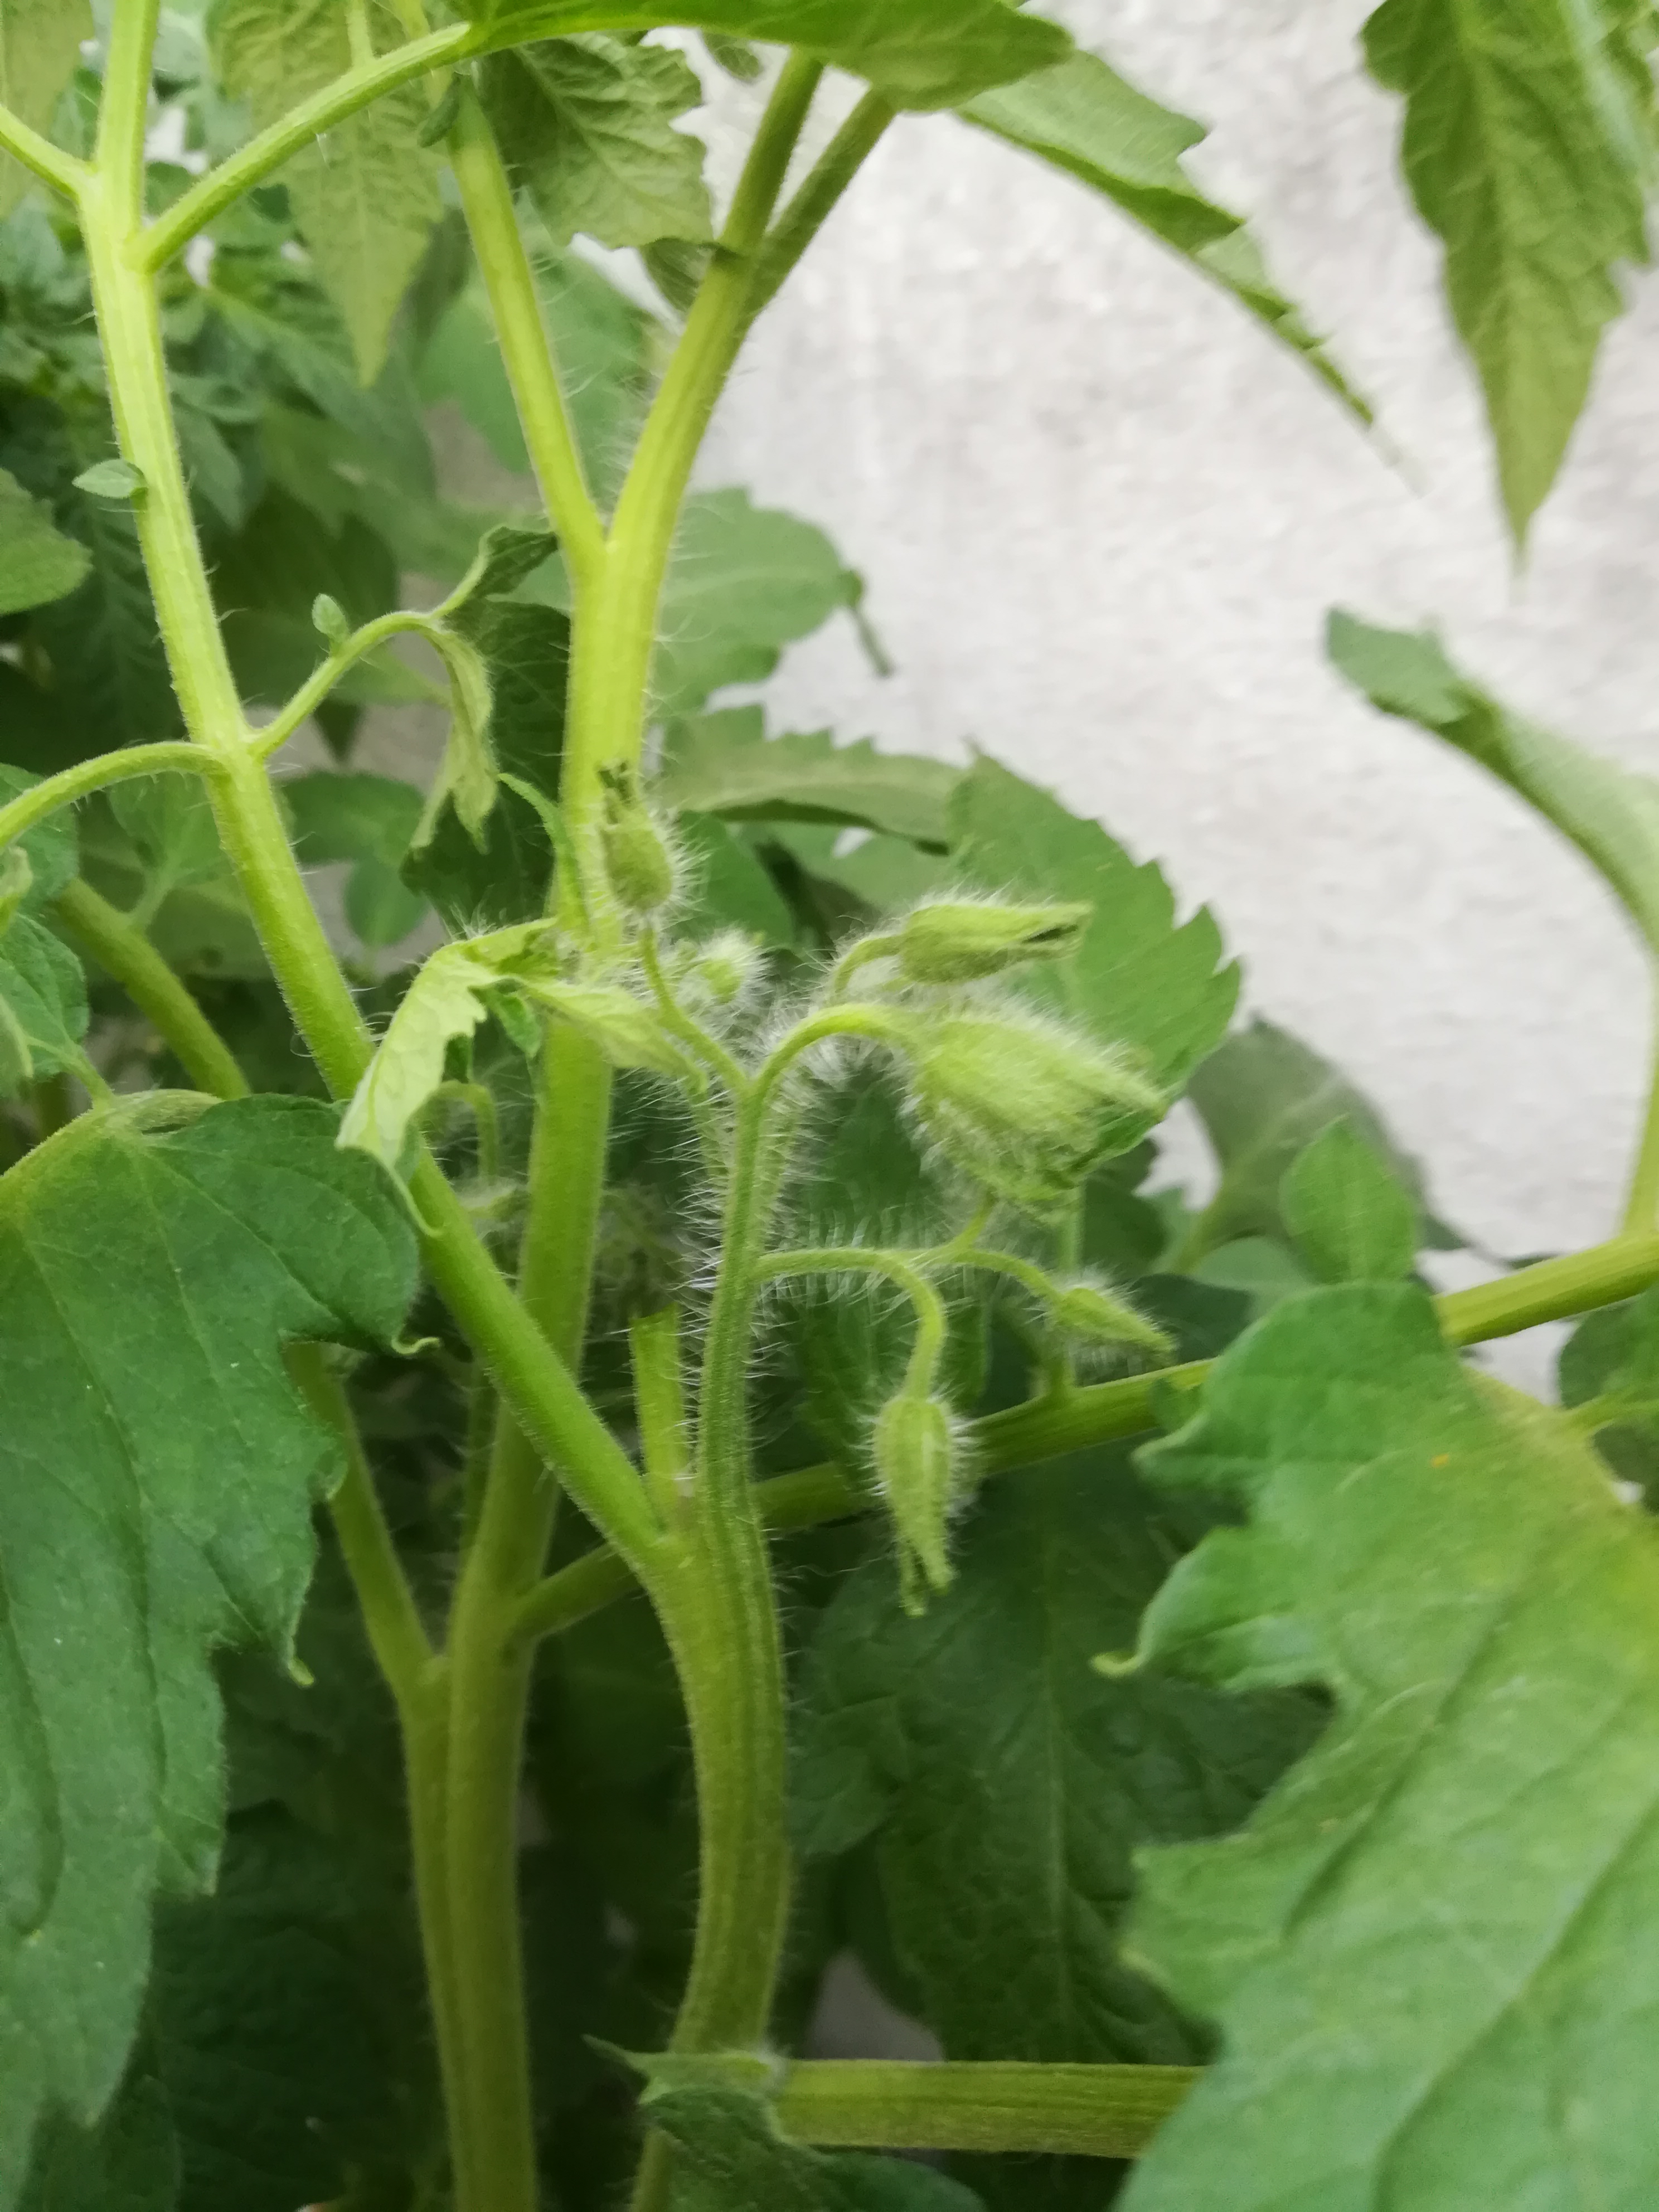 Aparecimento da flor no tomateiro